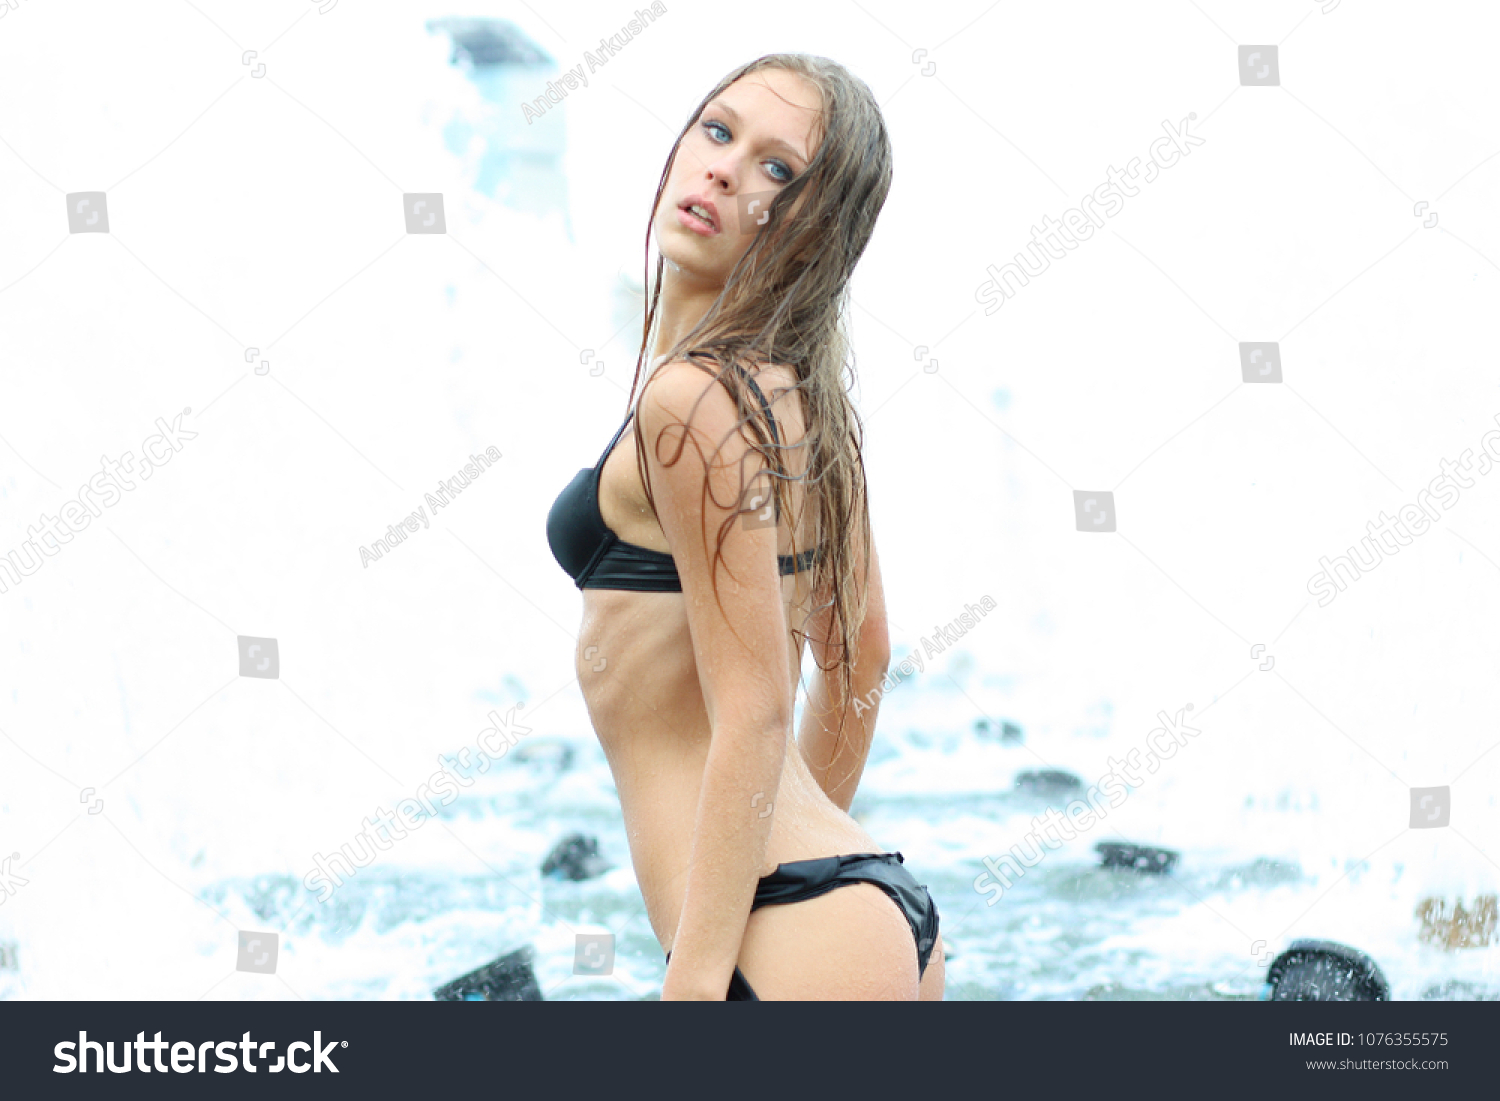 Russian Bikini